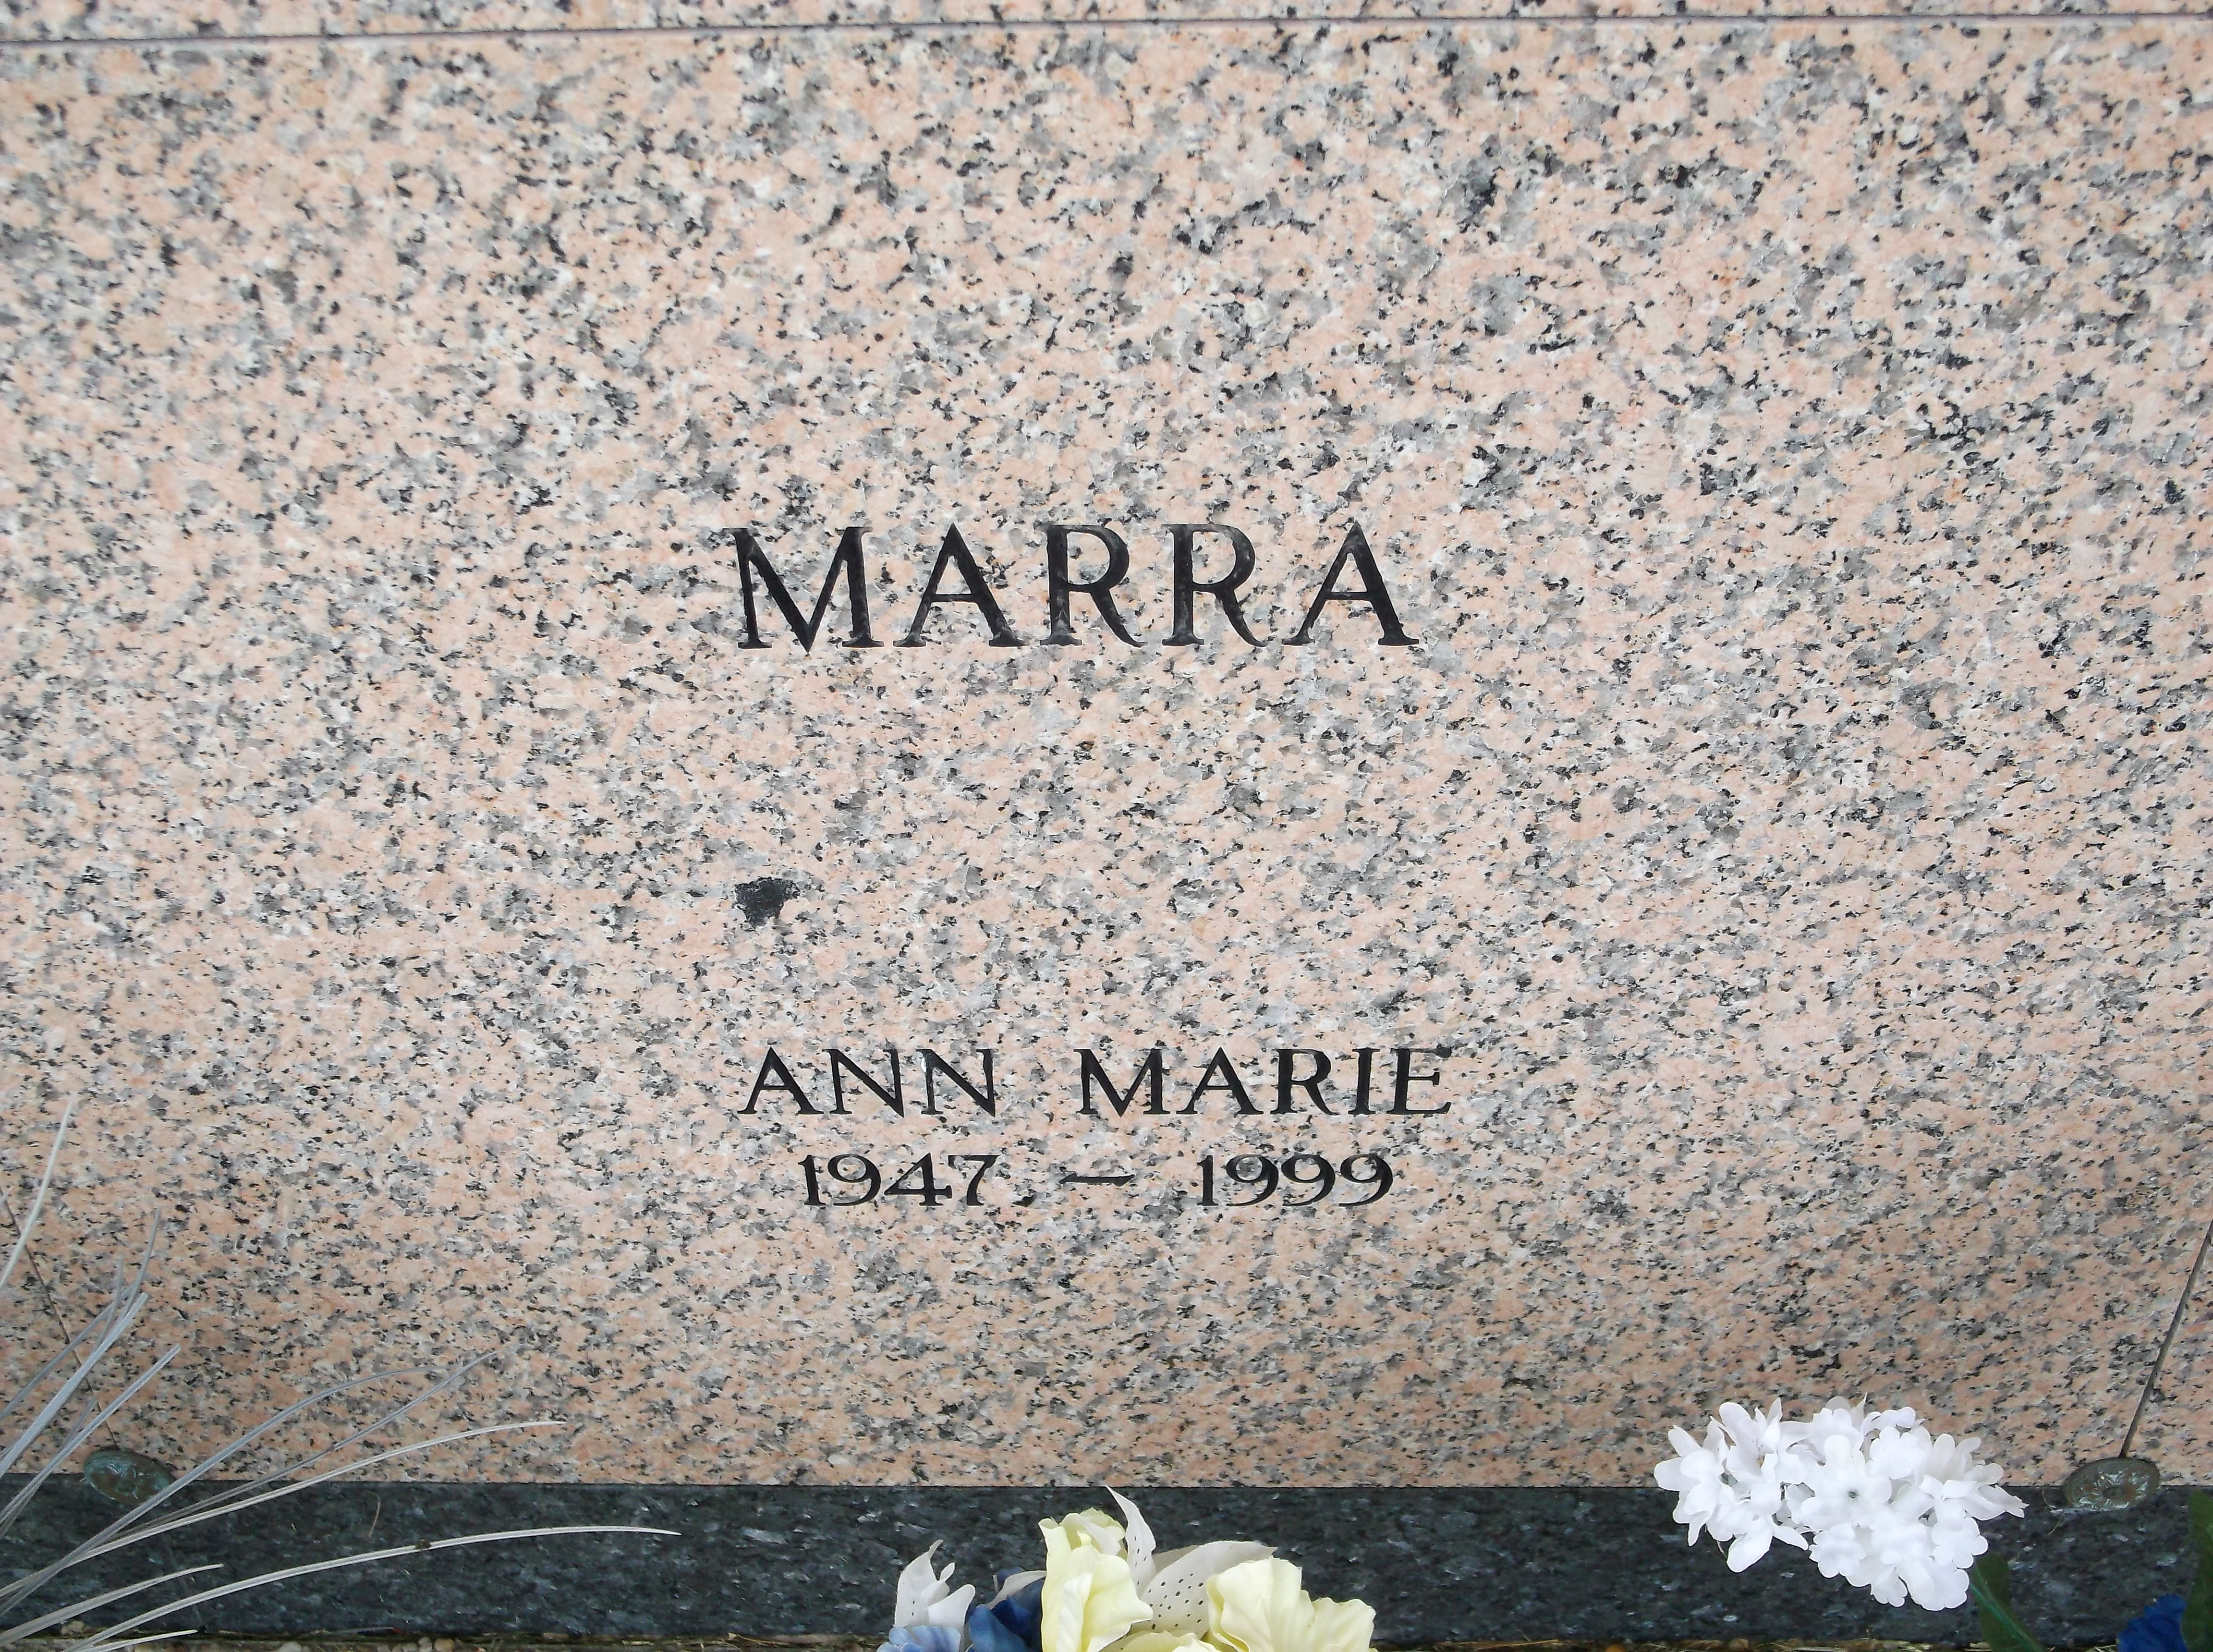 Ann Marie Marra